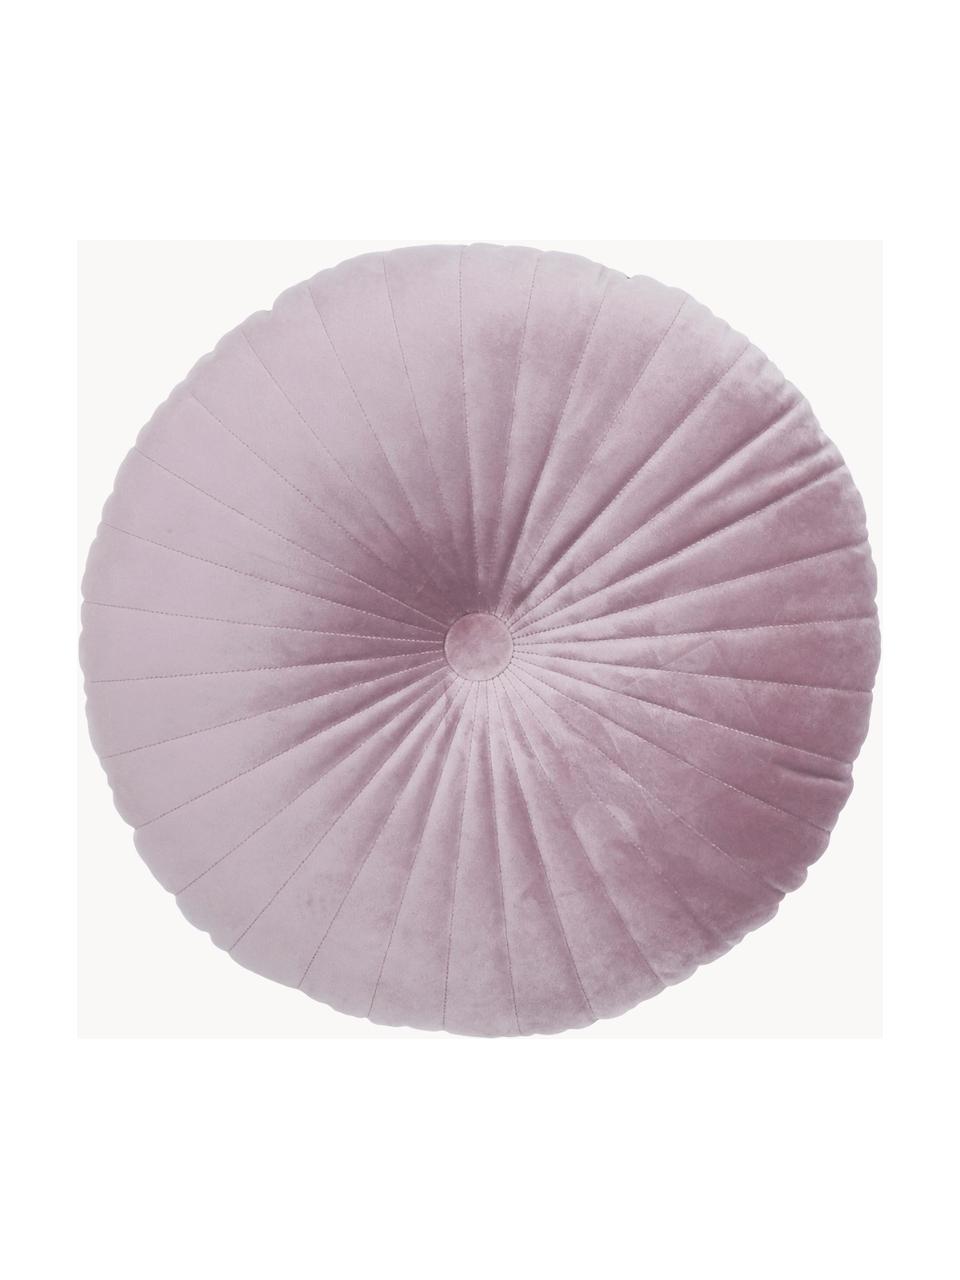 Okrągła poduszka z aksamitu Monet, Tapicerka: 100% aksamit poliestrowy, Brudny różowy, Ø 40 cm